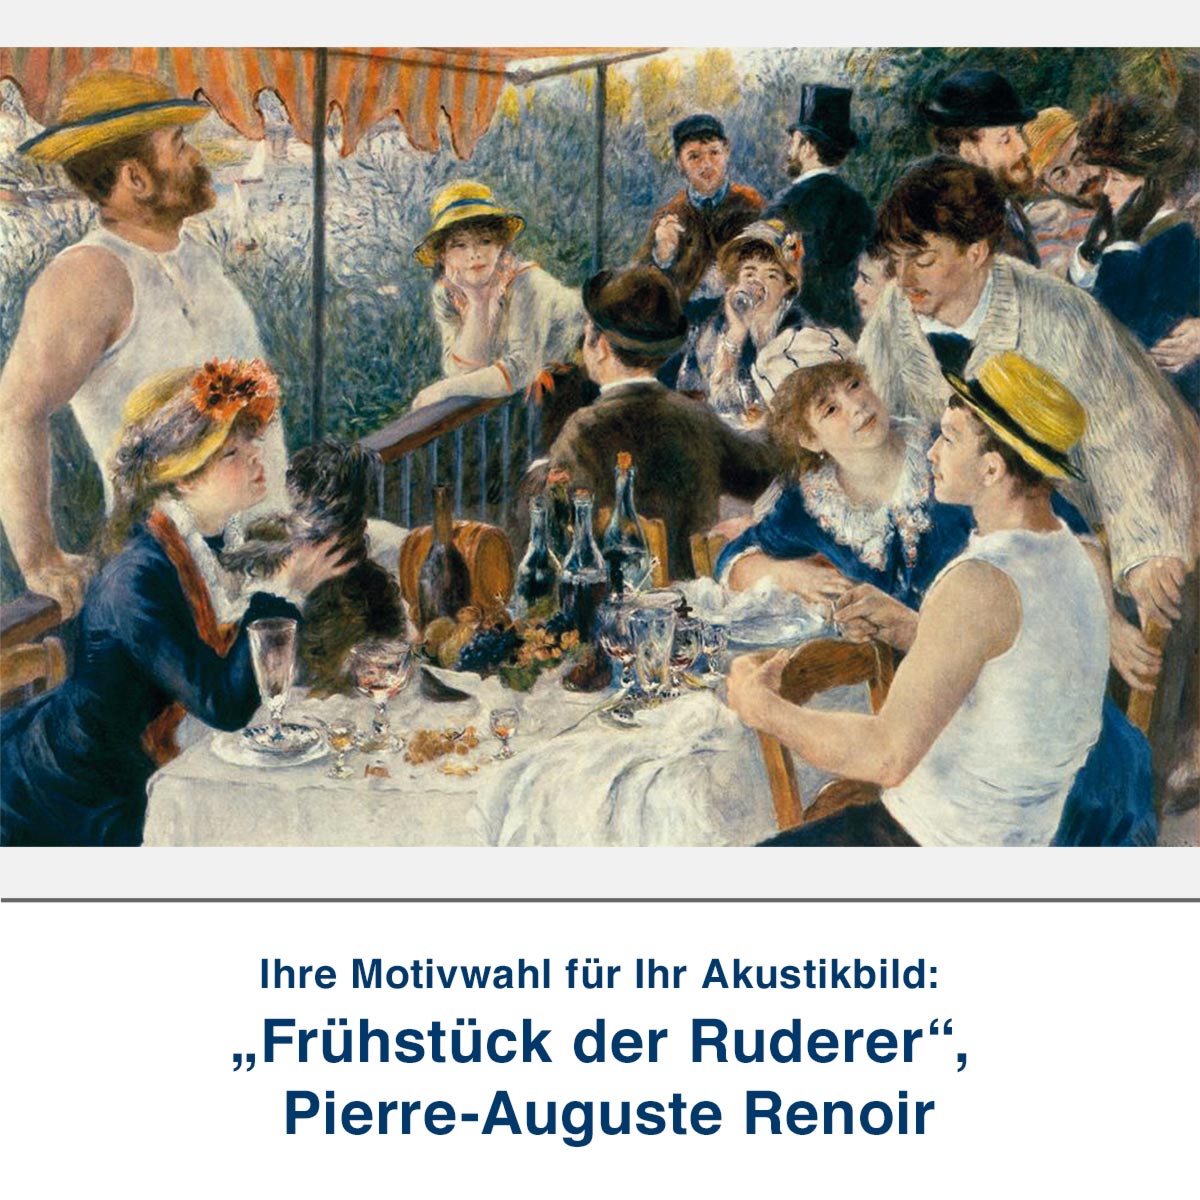 Akustikbild „Frühstück der Ruderer“, Pierre-Auguste Renoir